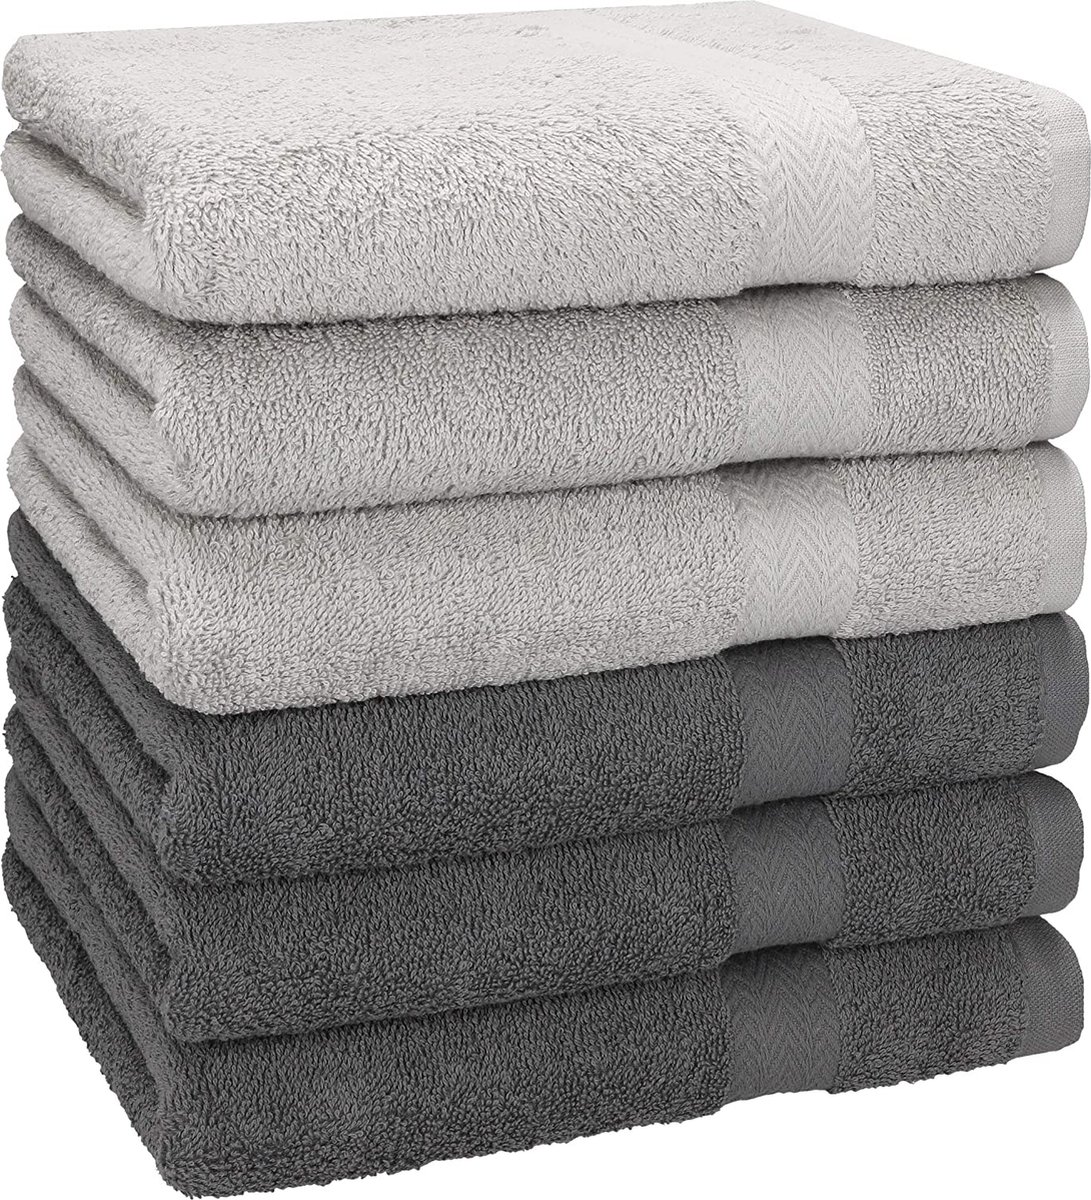 Betz 6 stuks handdoeken premium 100% katoen grootte 50 cm x 100 cm zilvergrijs / antraciet